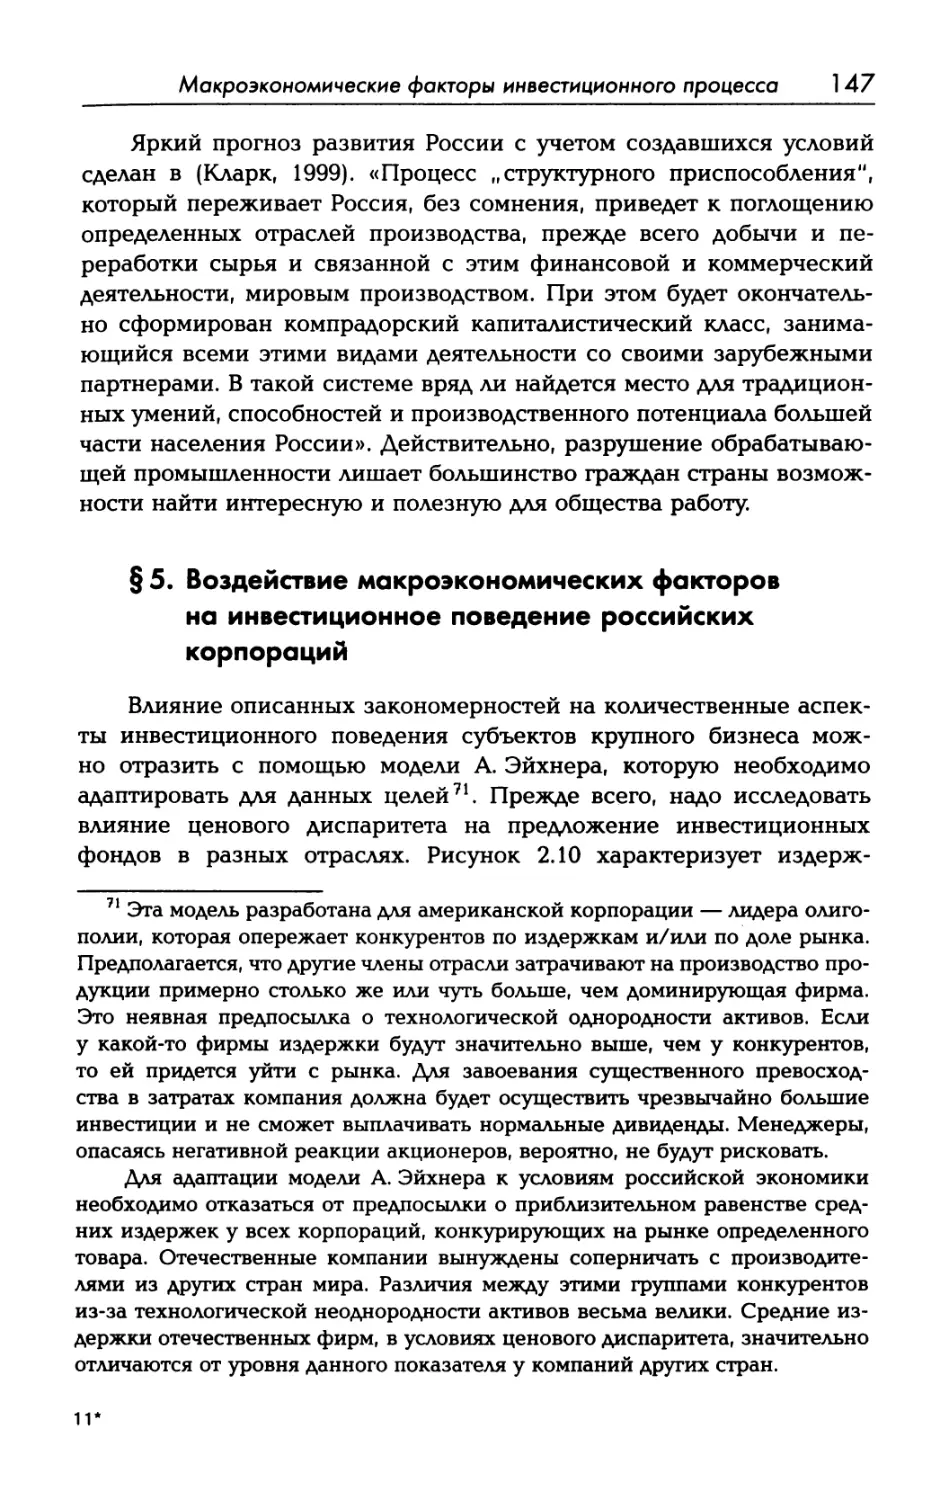 § 5. Воздействие макроэкономических факторов на инвестиционное поведение российских корпораций